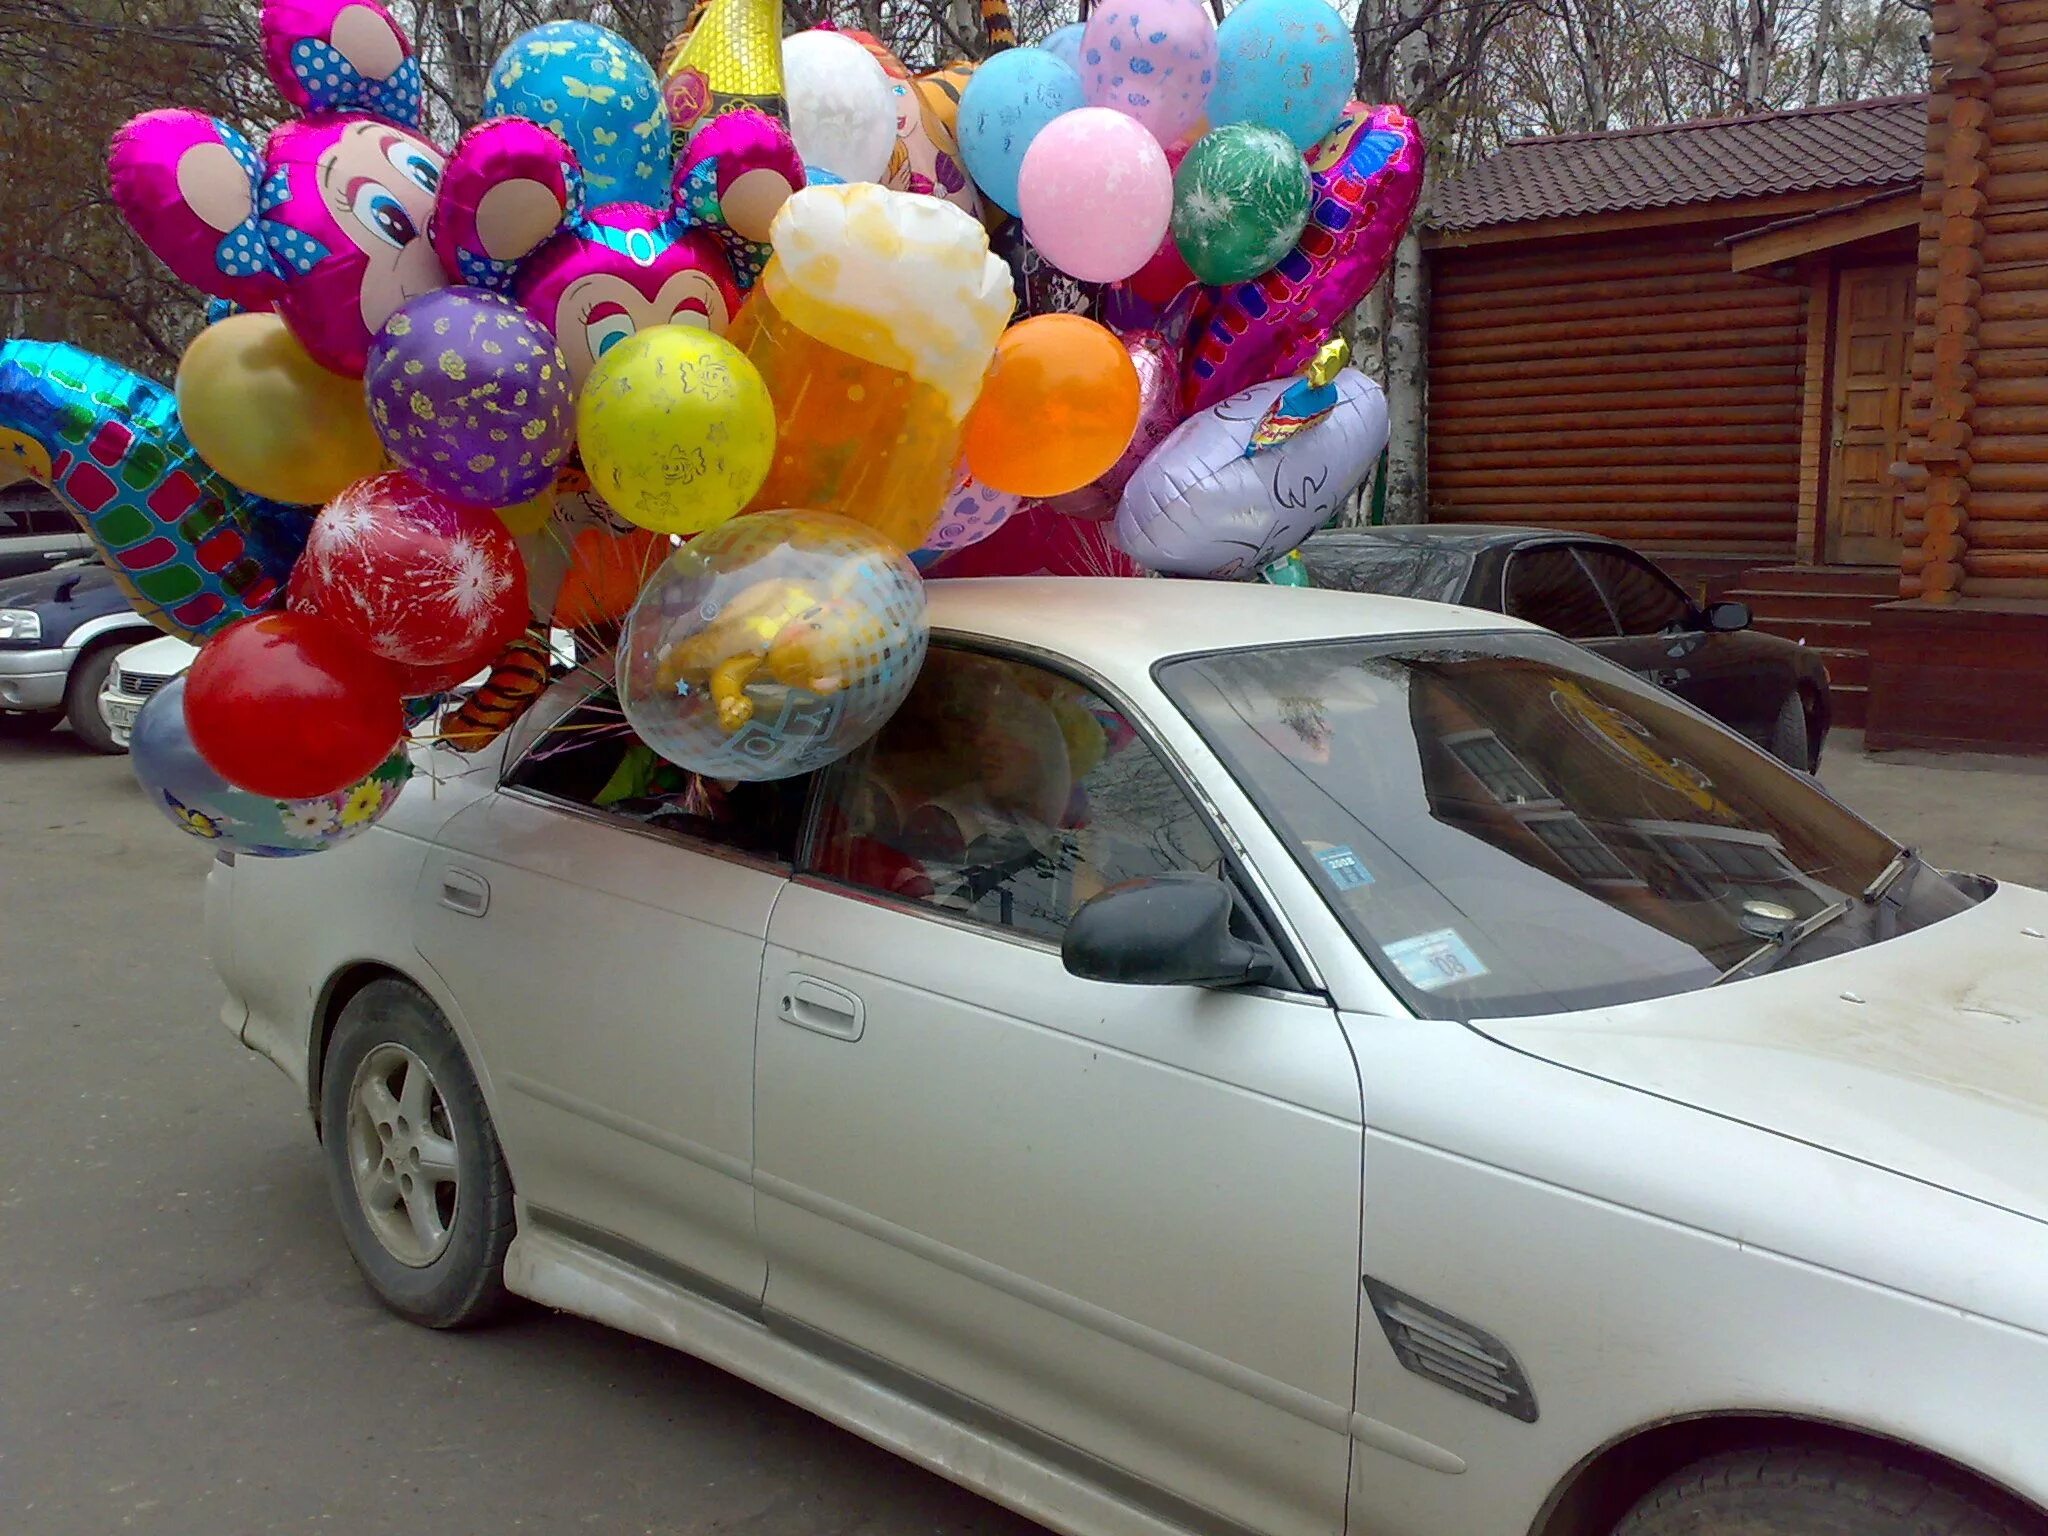 Шариков доставка шаров. Доставка шариков. Доставка шаров на машине. Для перевозки гелевых шаров любой авто подойдёт. Ленд СПБ перевозка шариков.